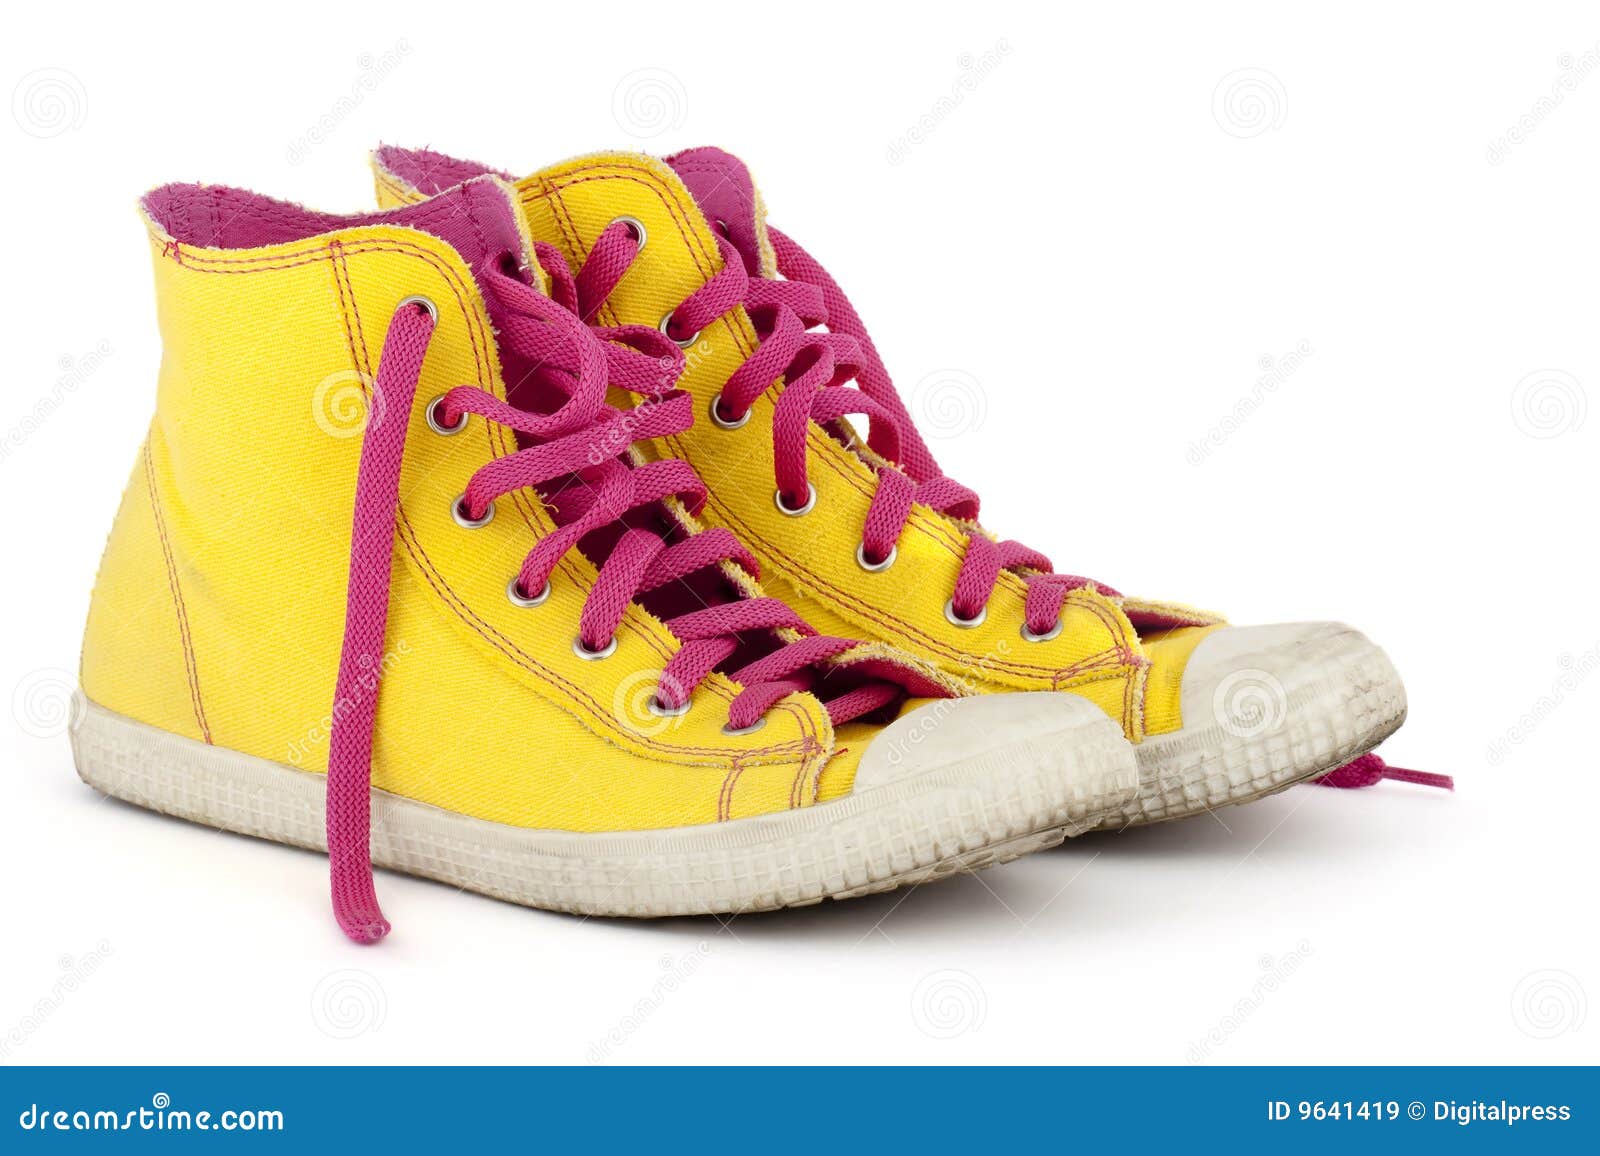 Gele Schoenen Met Roze Schoenveter Stock Afbeelding - Image of schoenen ...